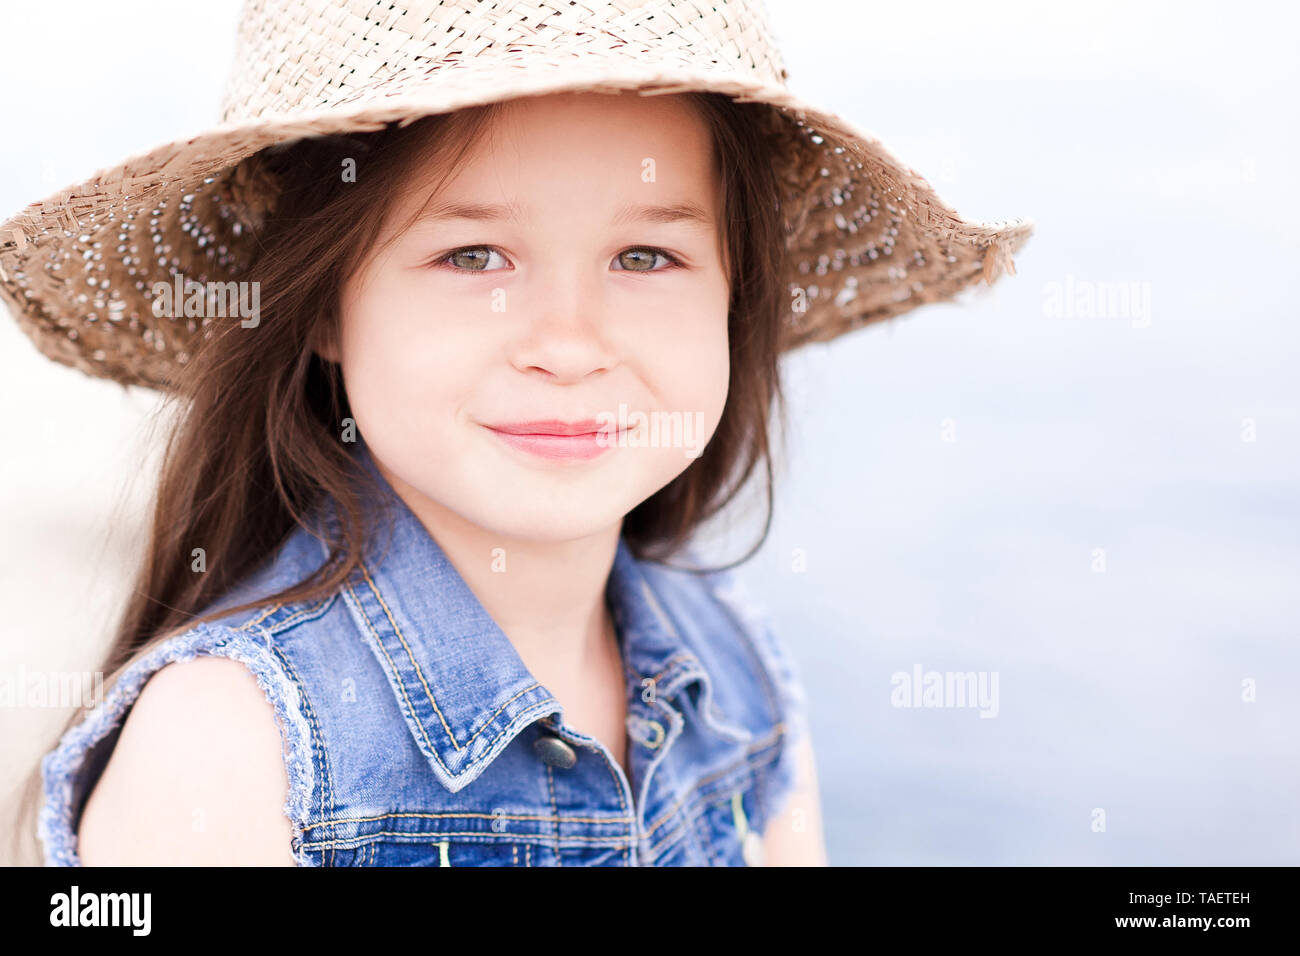 bebé, verano, sombrero de paja, bebé, bebés, bebés humanos, veranos,  sombreros de paja Fotografía de stock - Alamy